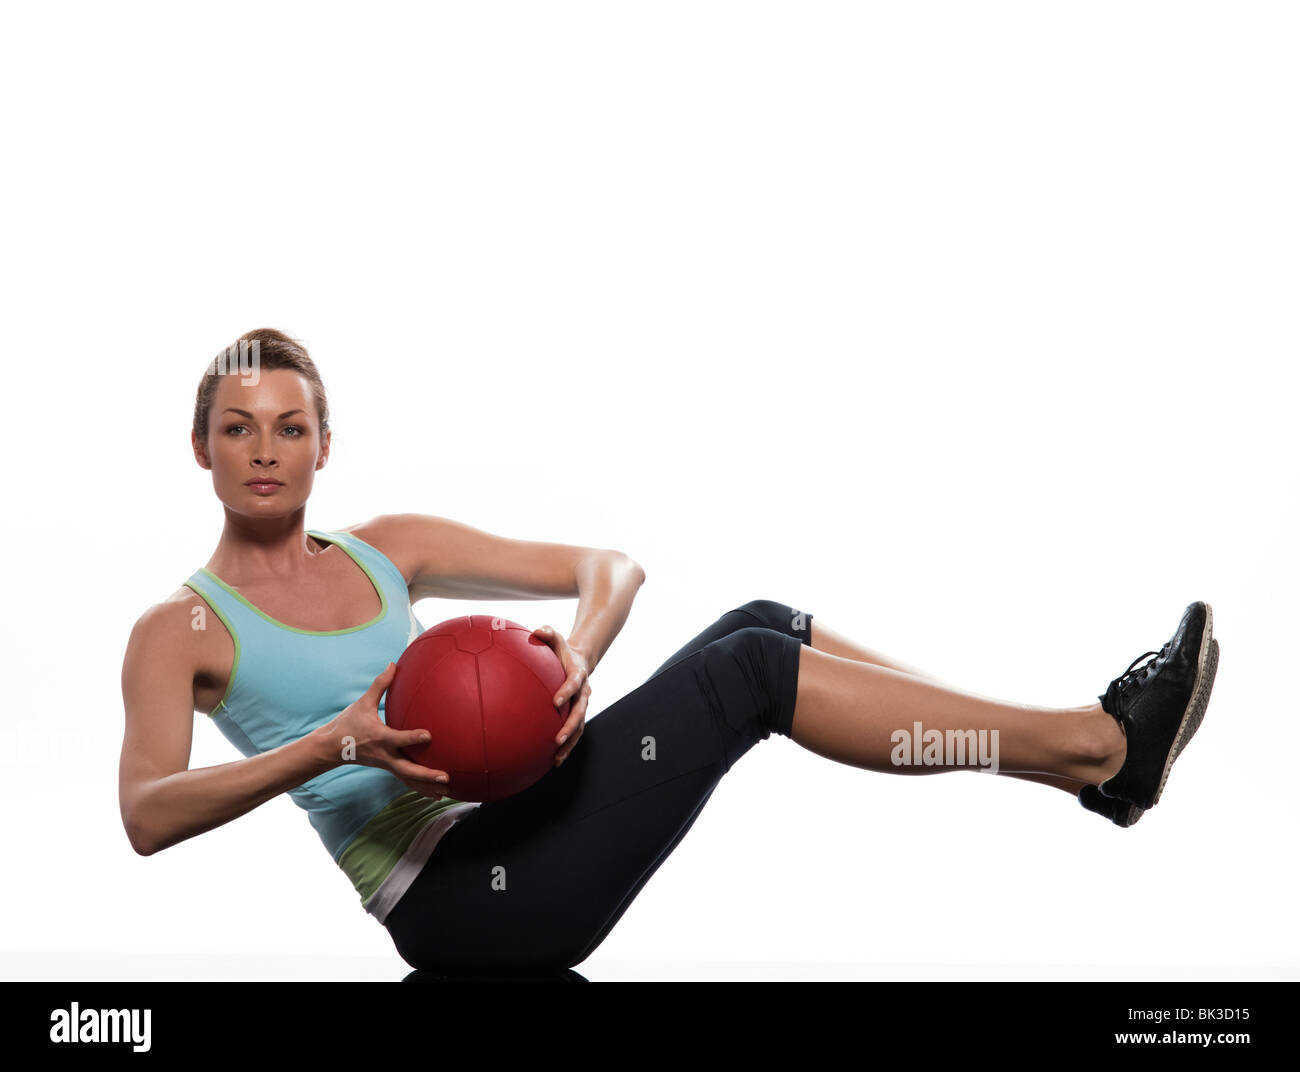 Frau mit Fitness-Ball Worrkout Haltung Übung Bauchmuskeln trainieren Körperhaltung auf weißem Hintergrund Studio isoliert Stockfoto